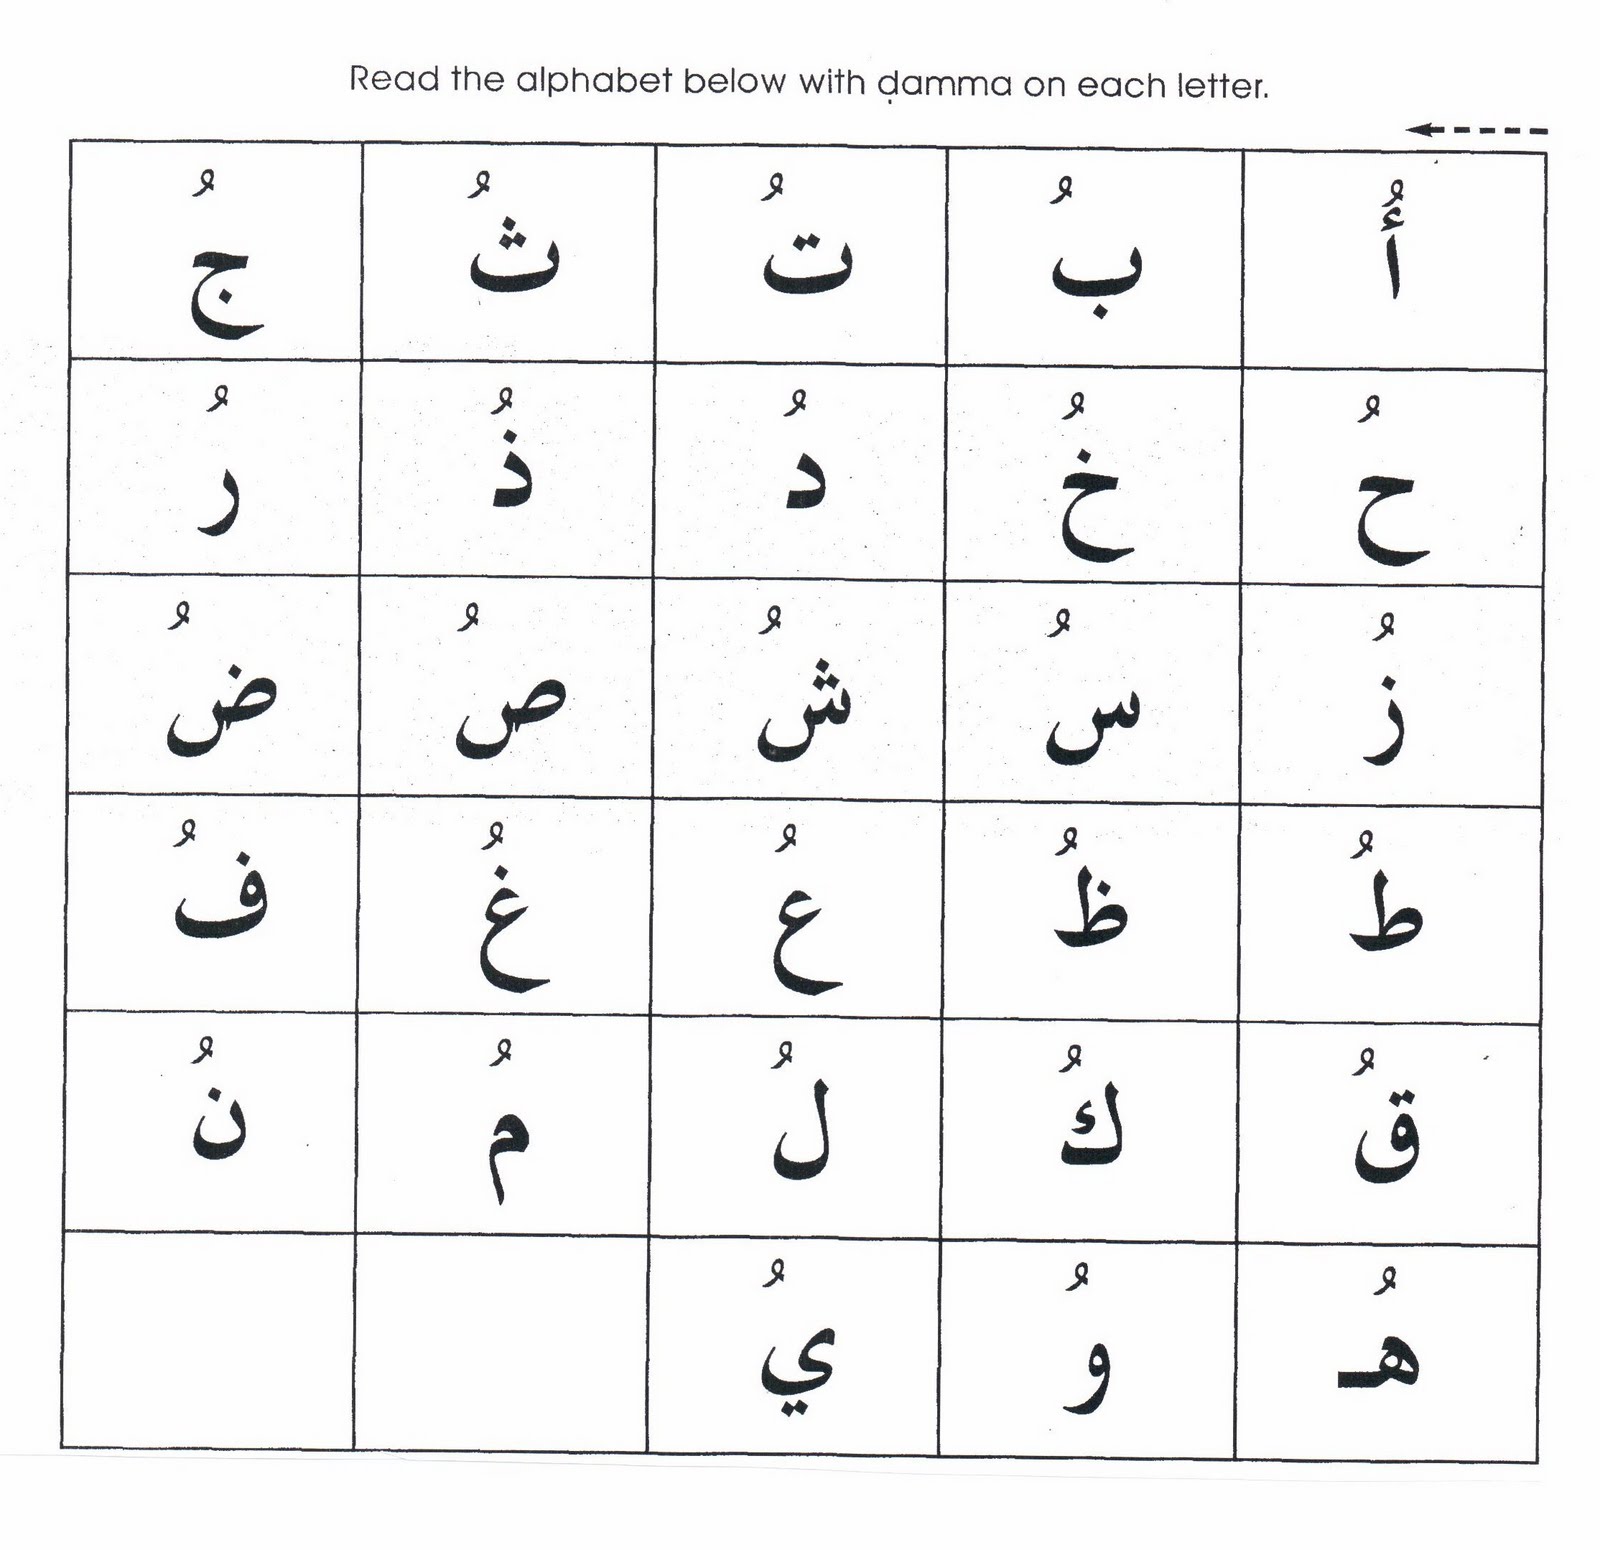 Название арабских букв